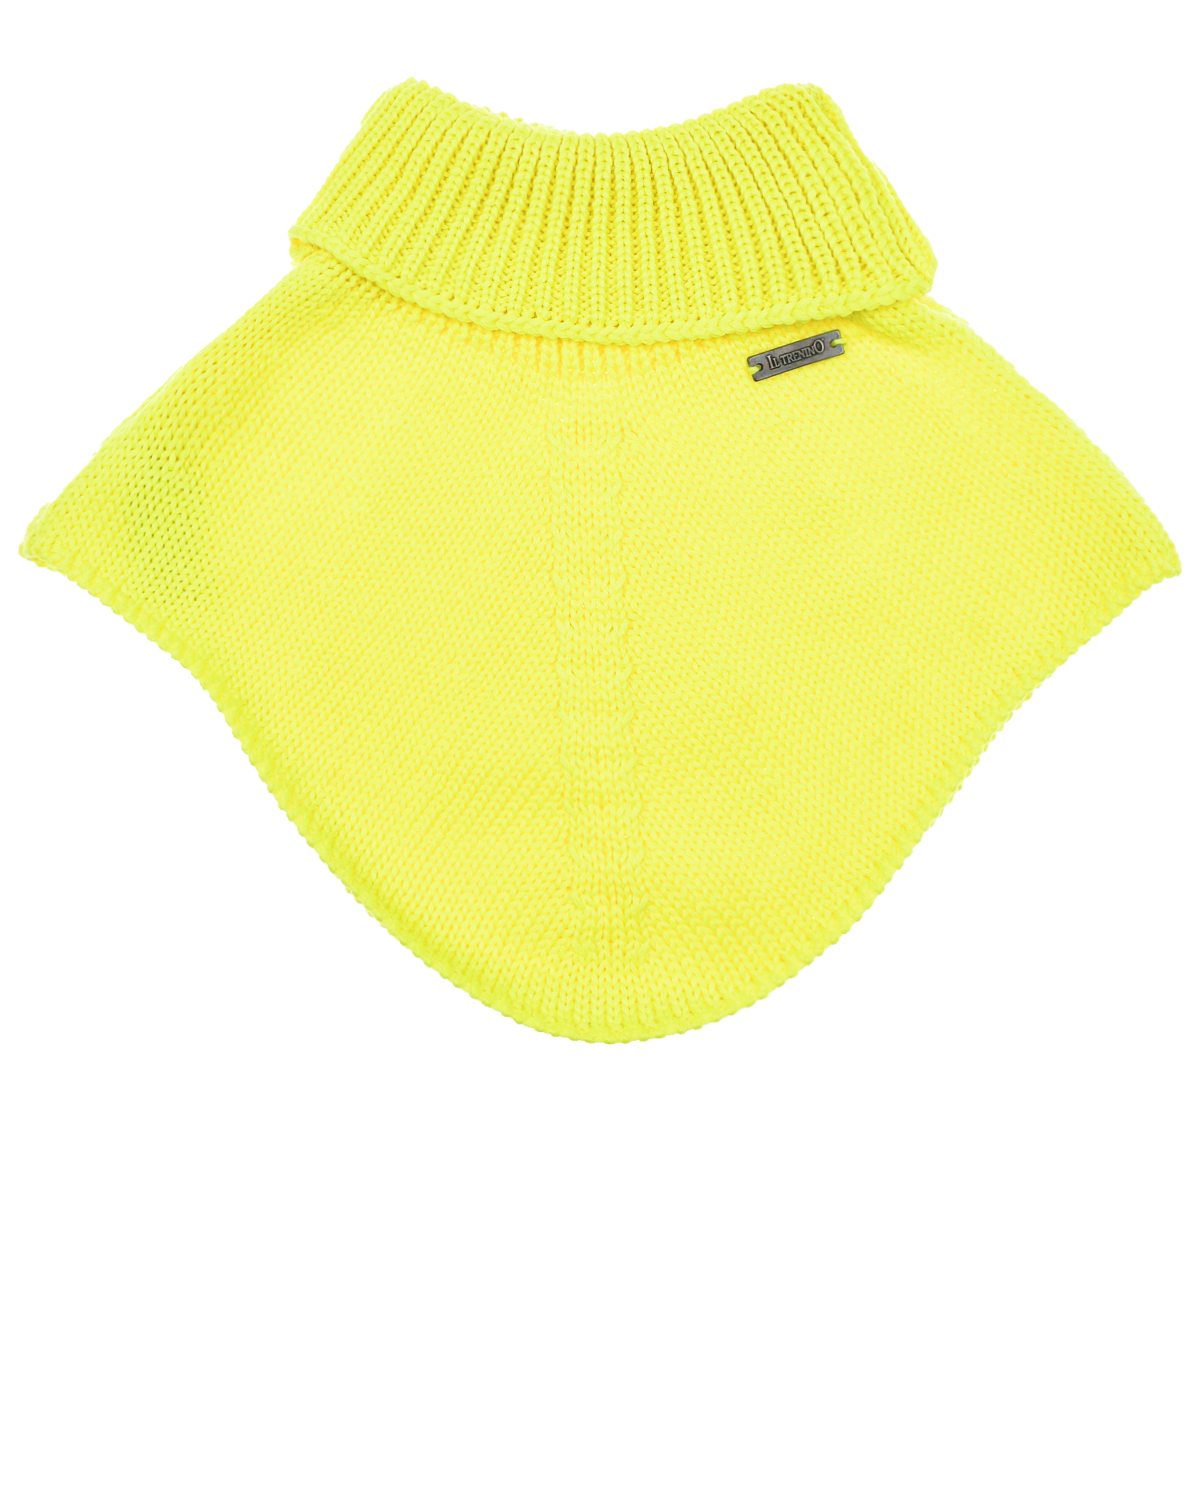 Желтый шарф-горло из шерсти Il Trenino детский, размер unica